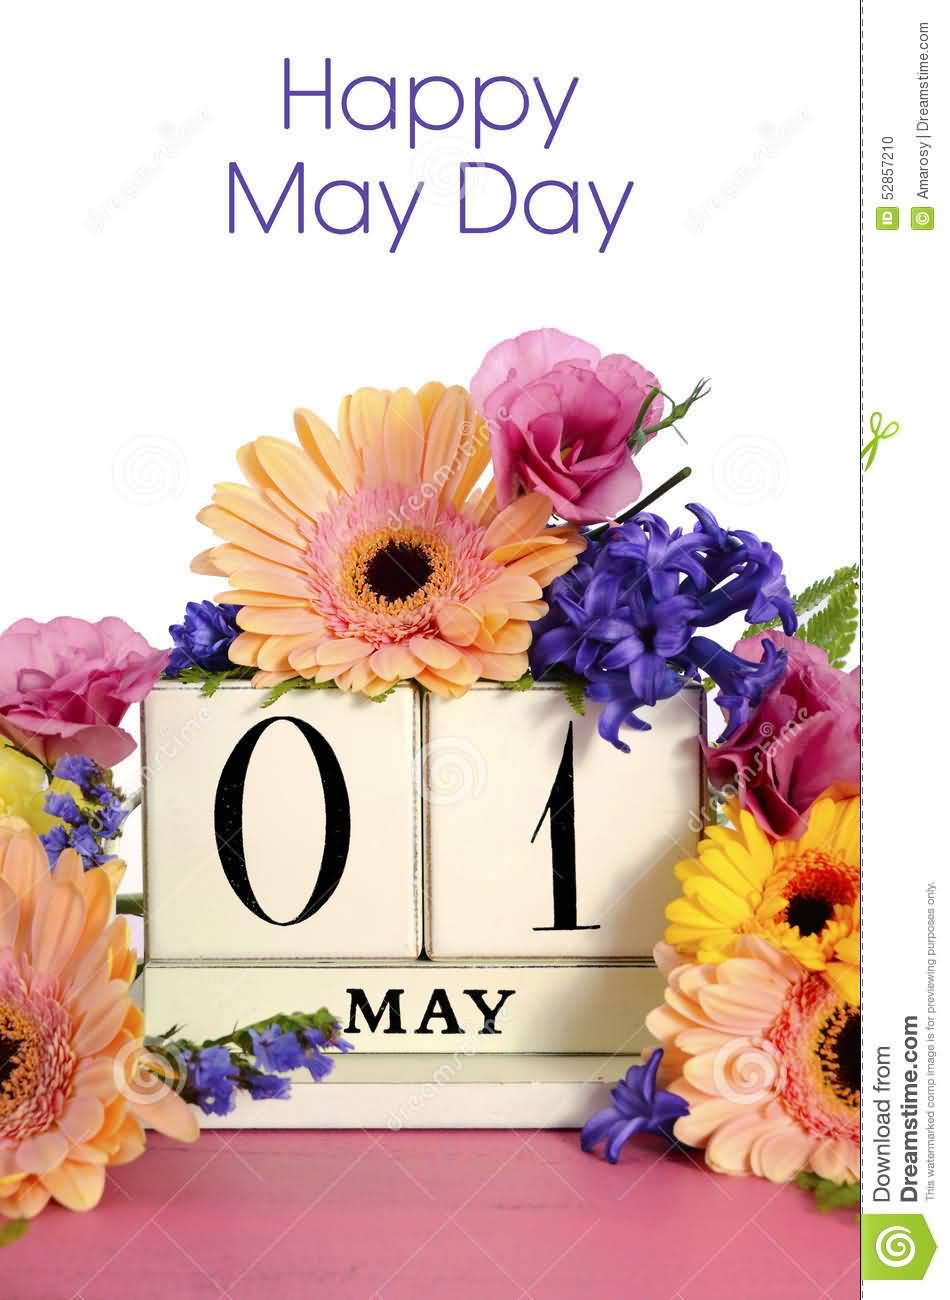 Happy May Day 1 May Card